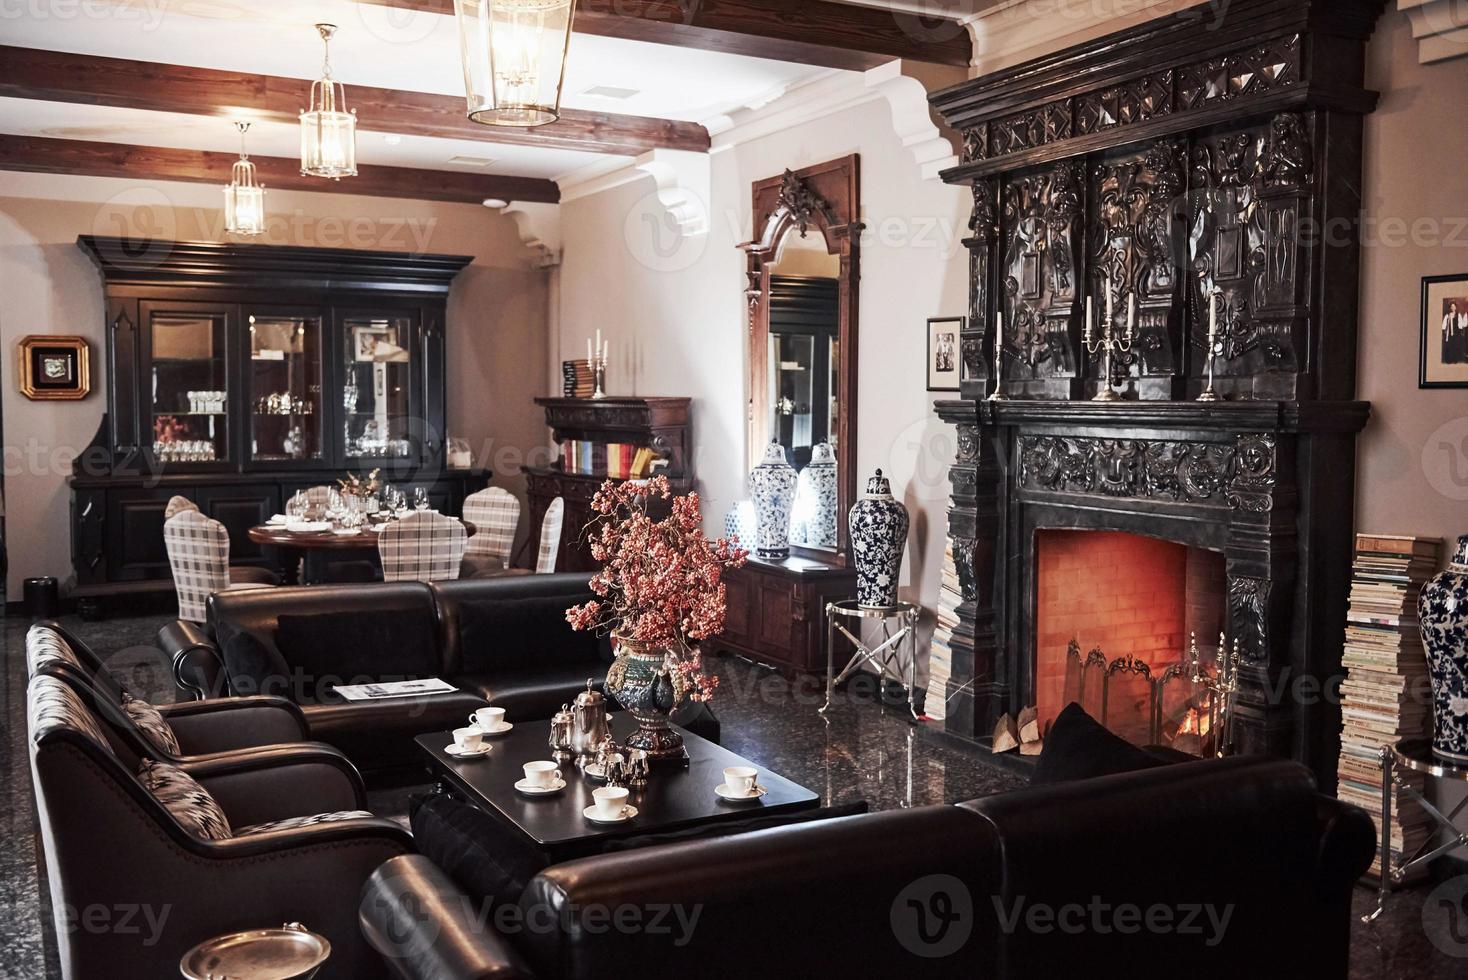 bom ter a chance de andar por lá. interior do restaurante de luxo em estilo aristocrático vintage com bela lareira foto